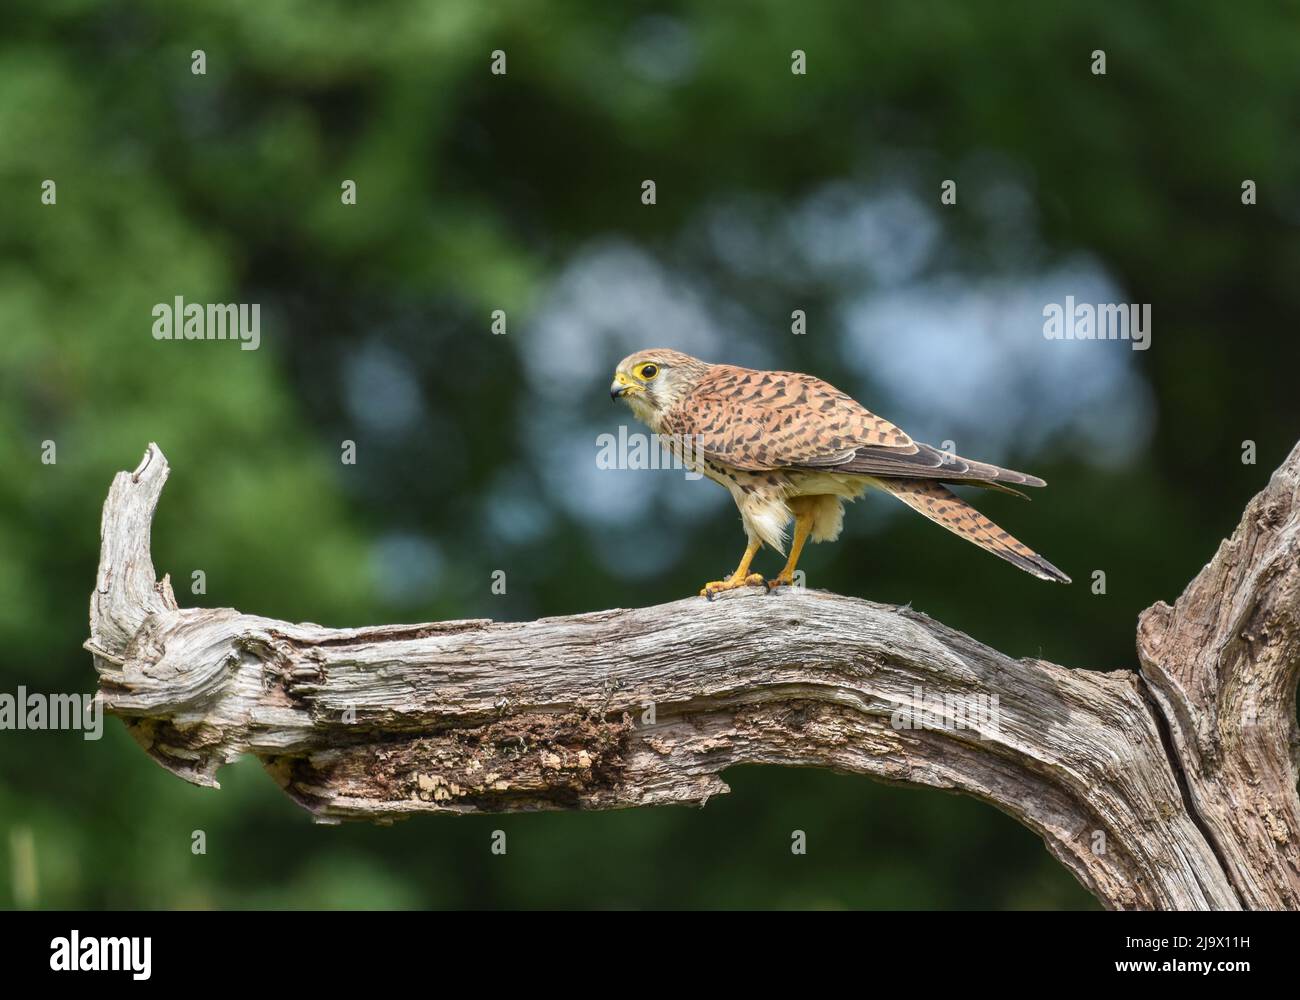 Kestrel femelle perchée sur une branche d'arbre. Selby North Yorkshire. Falco tinnunculus Banque D'Images